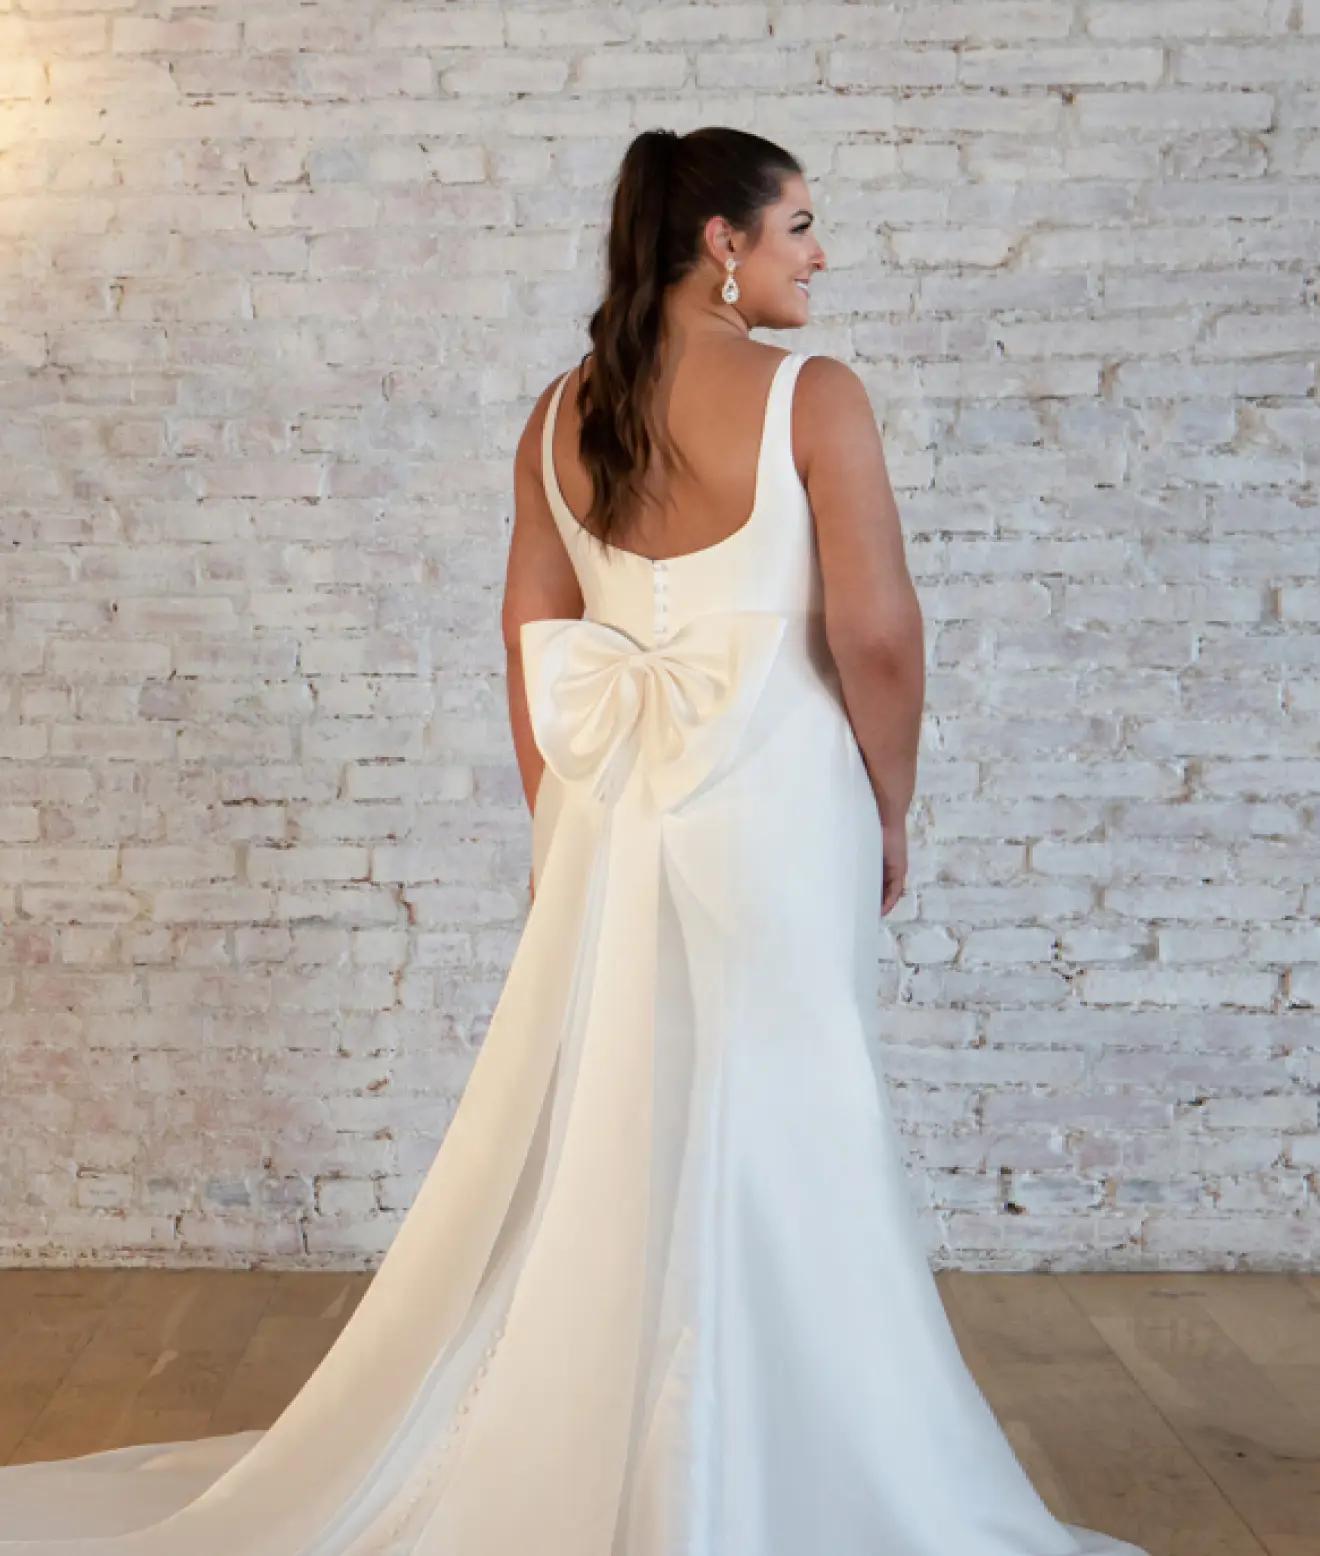 Plus sized model wearing wedding gown